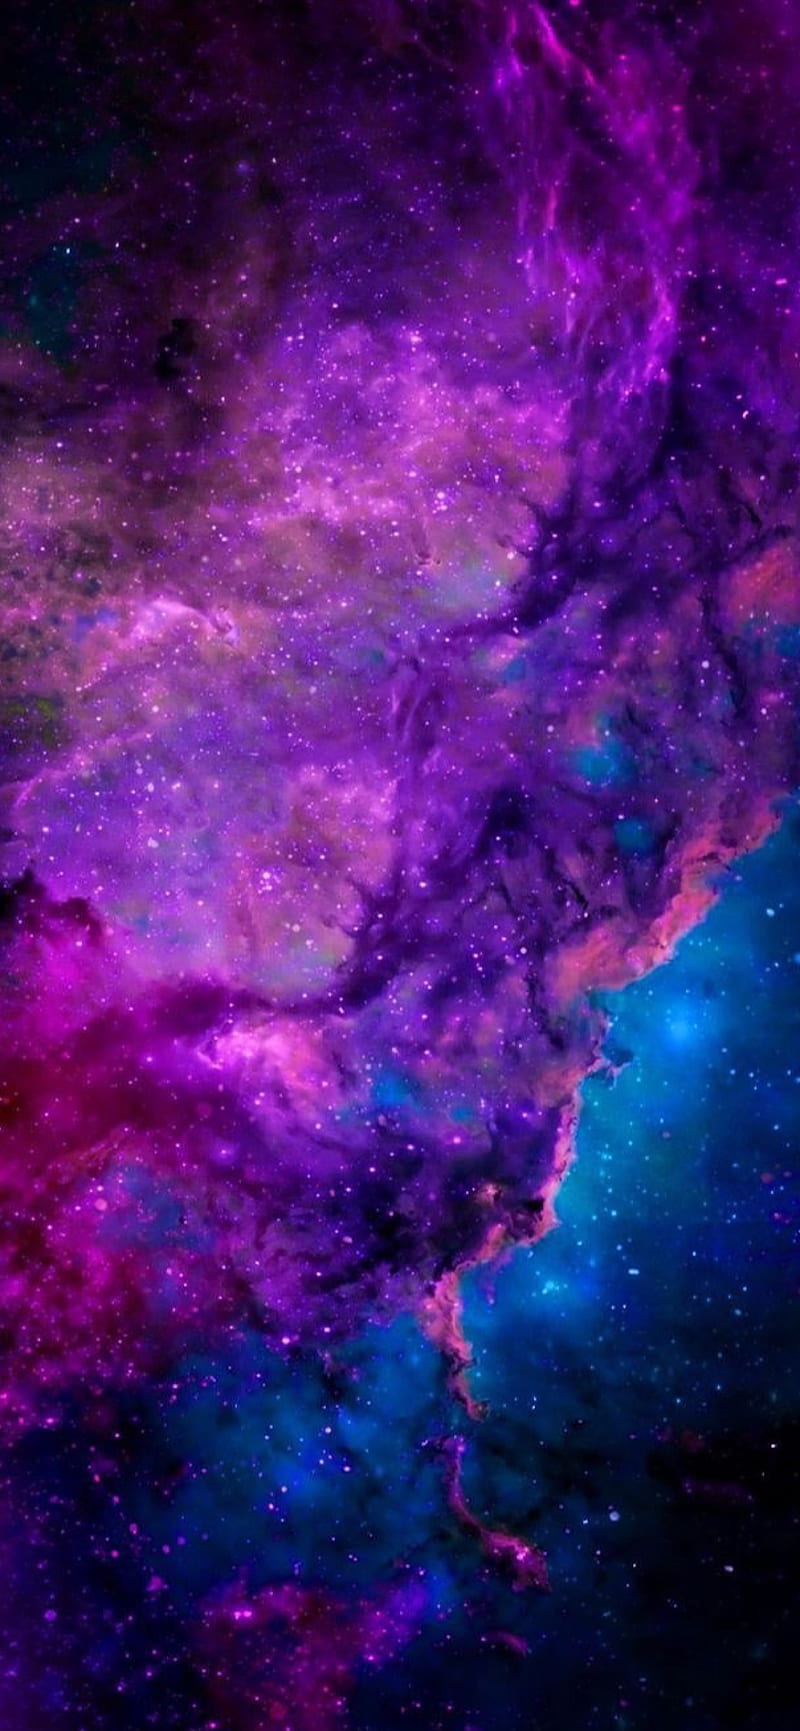 Galaxy, nebula, purple, space, universe, HD phone wallpaper